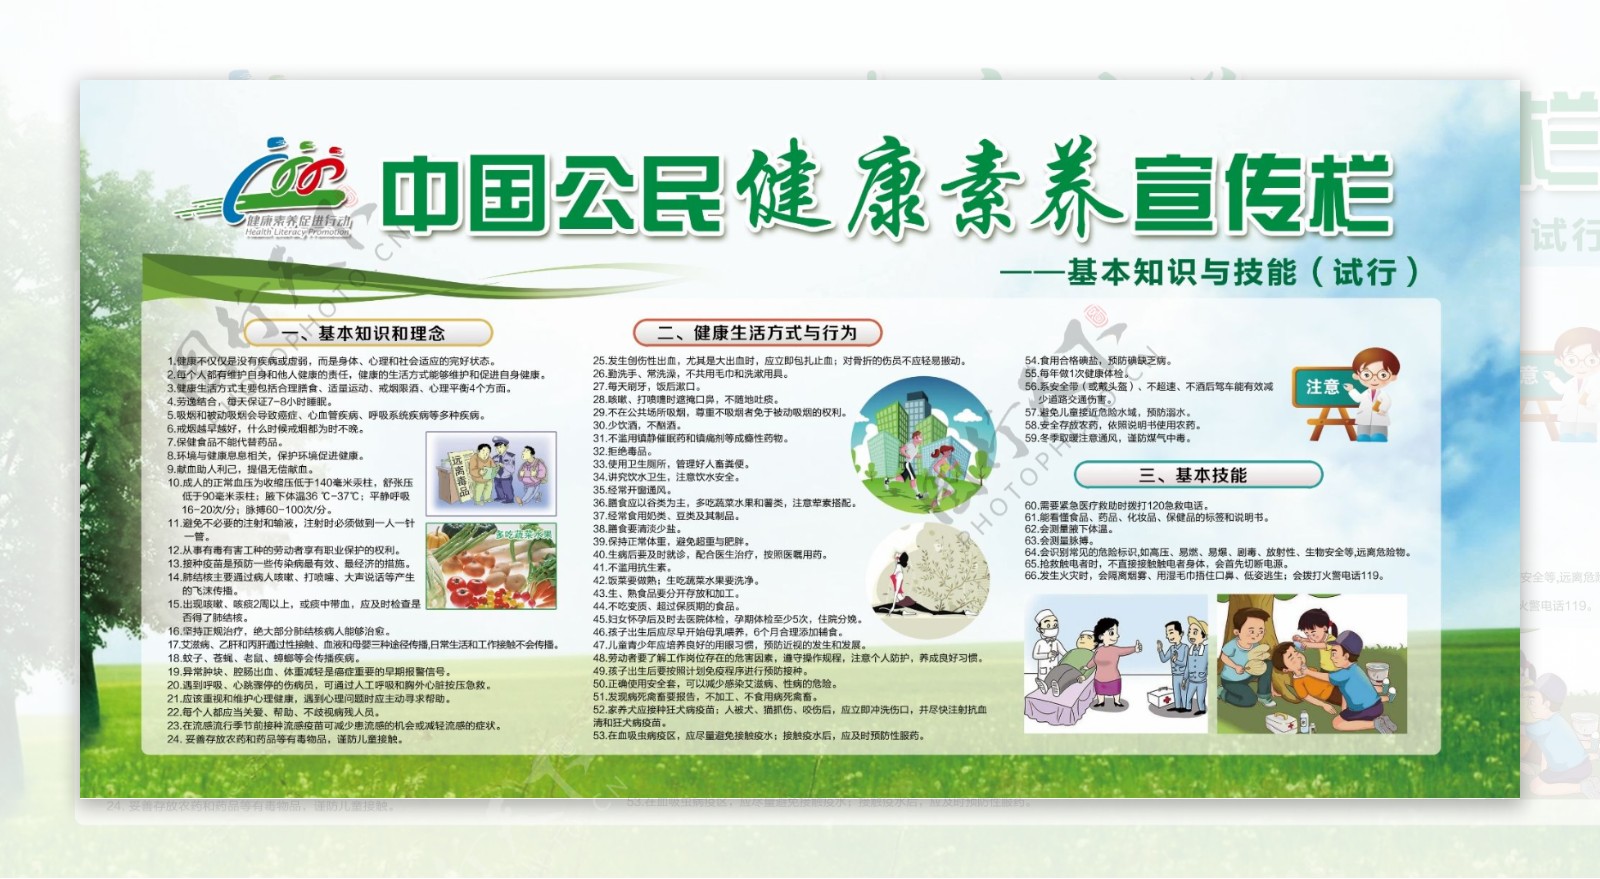 中国公民健康素养宣传栏